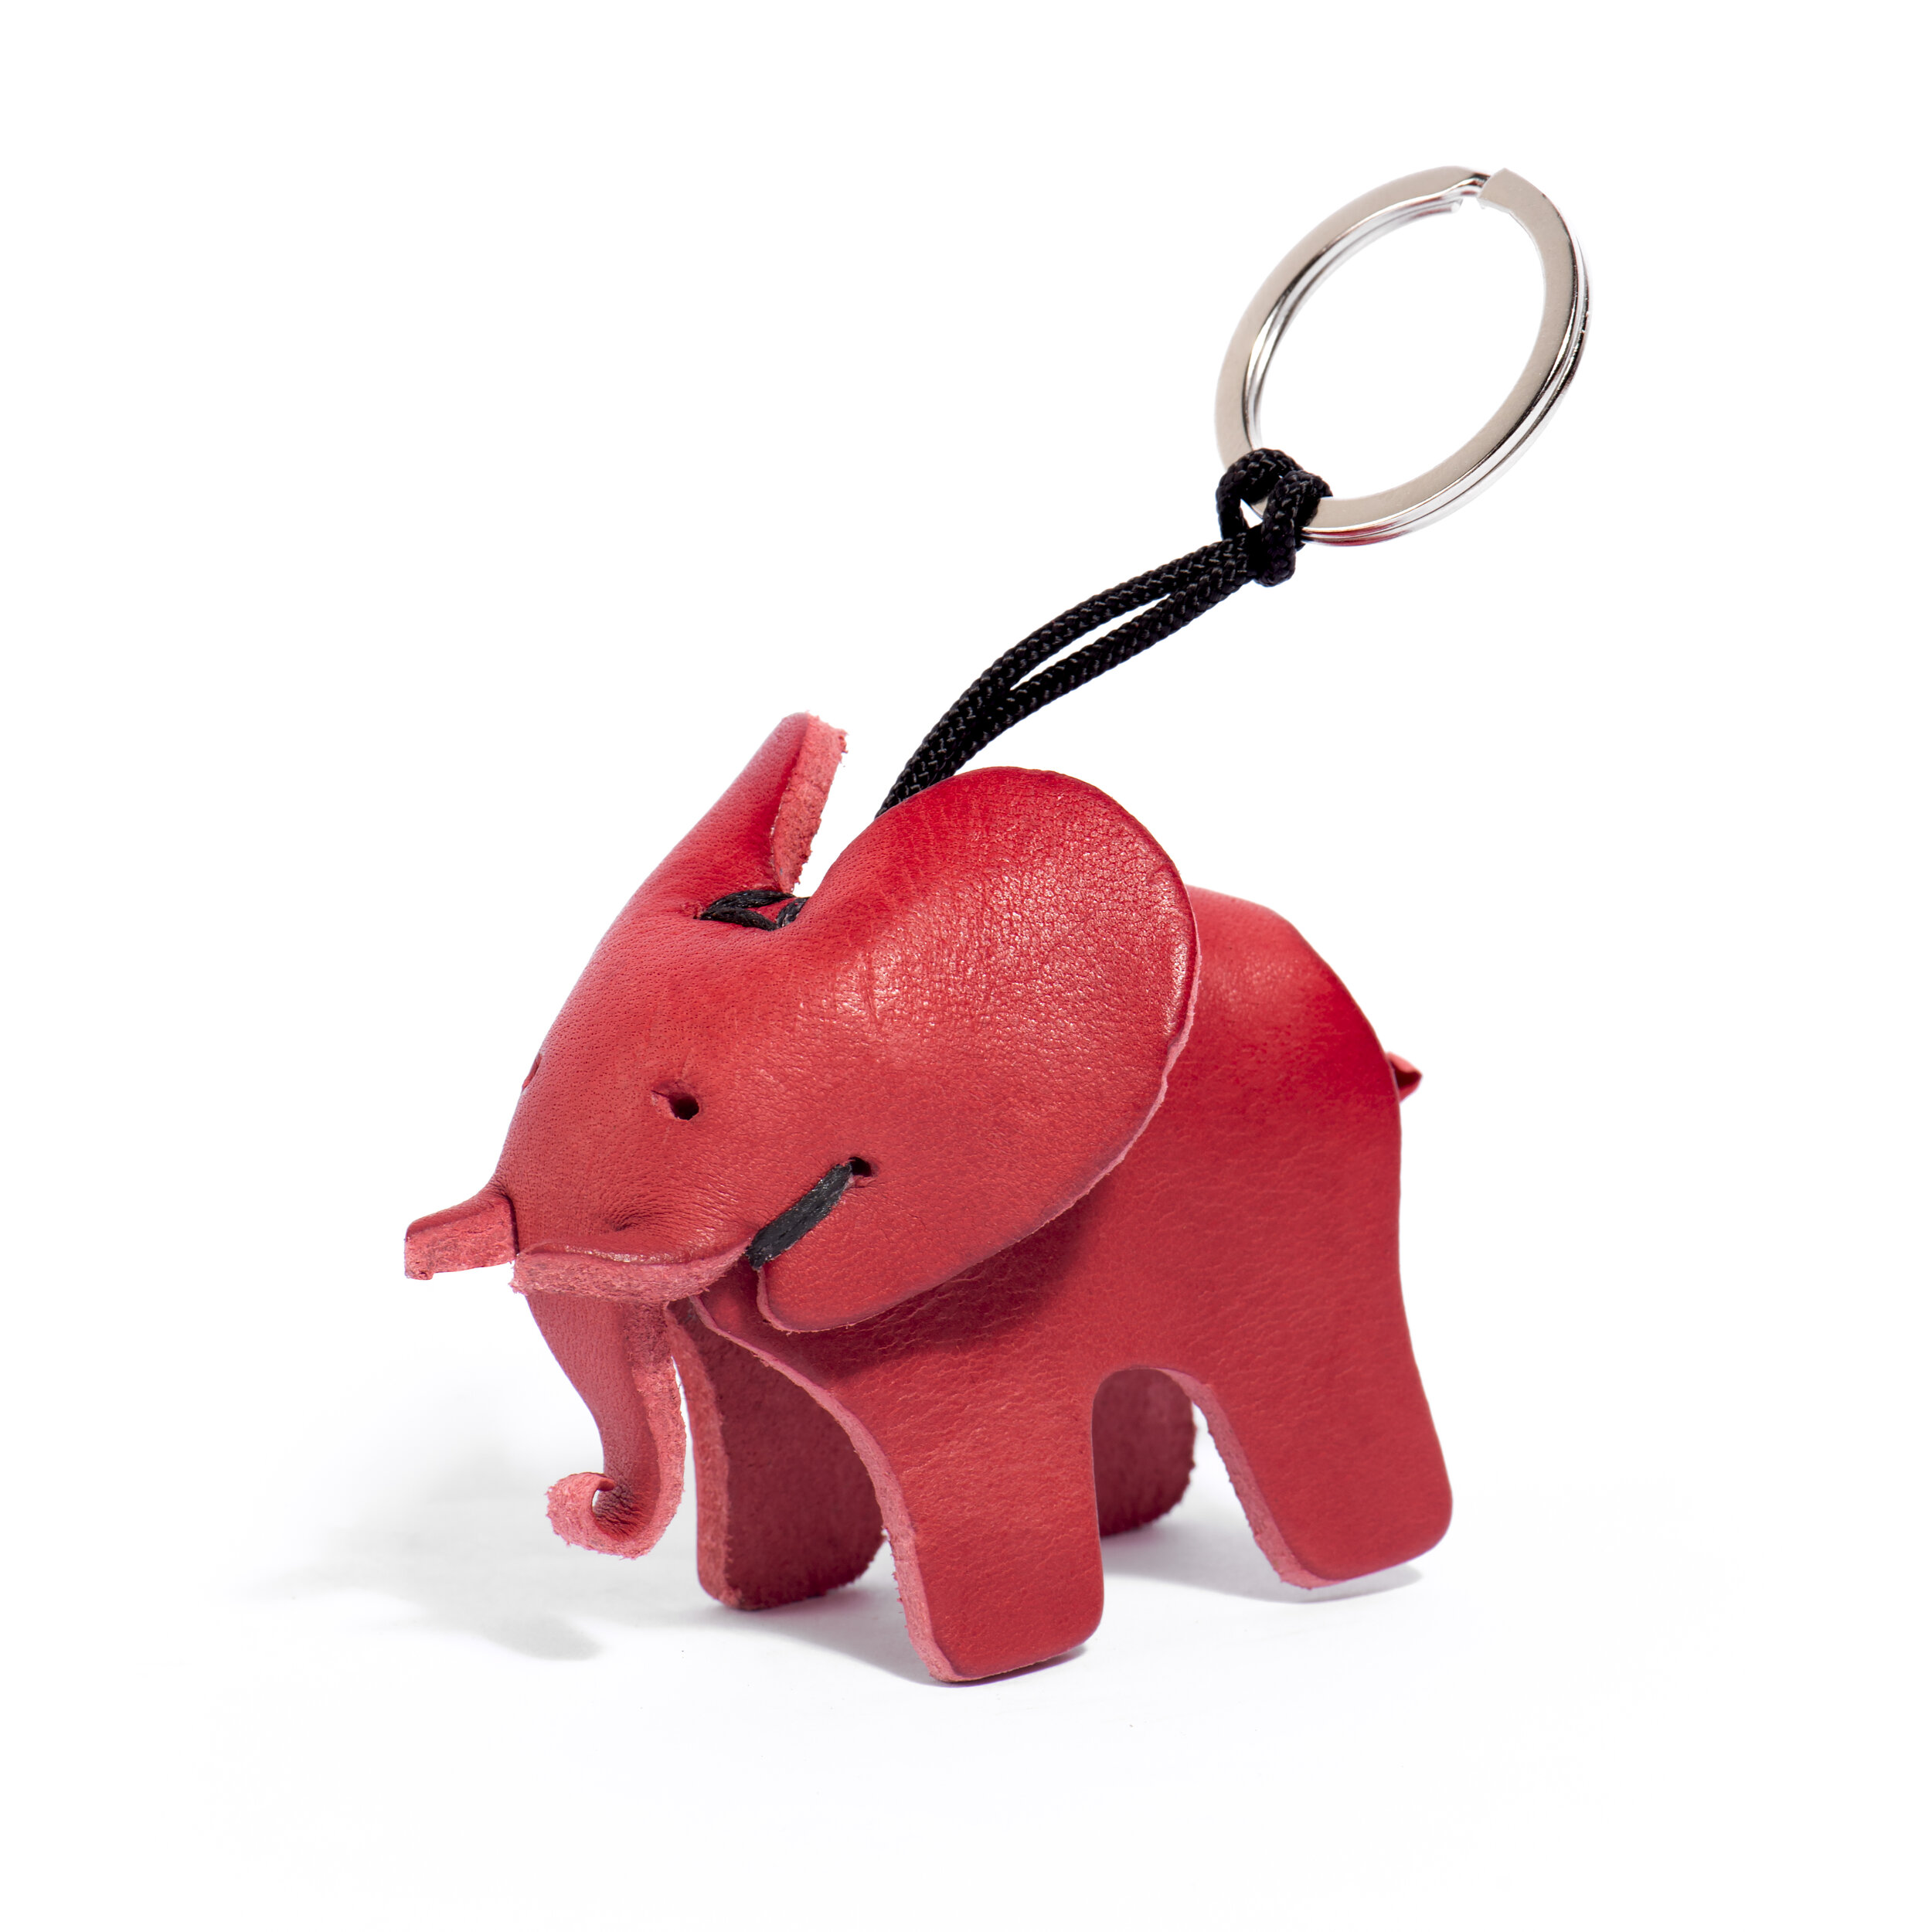 Fenice Elephant Key Ring